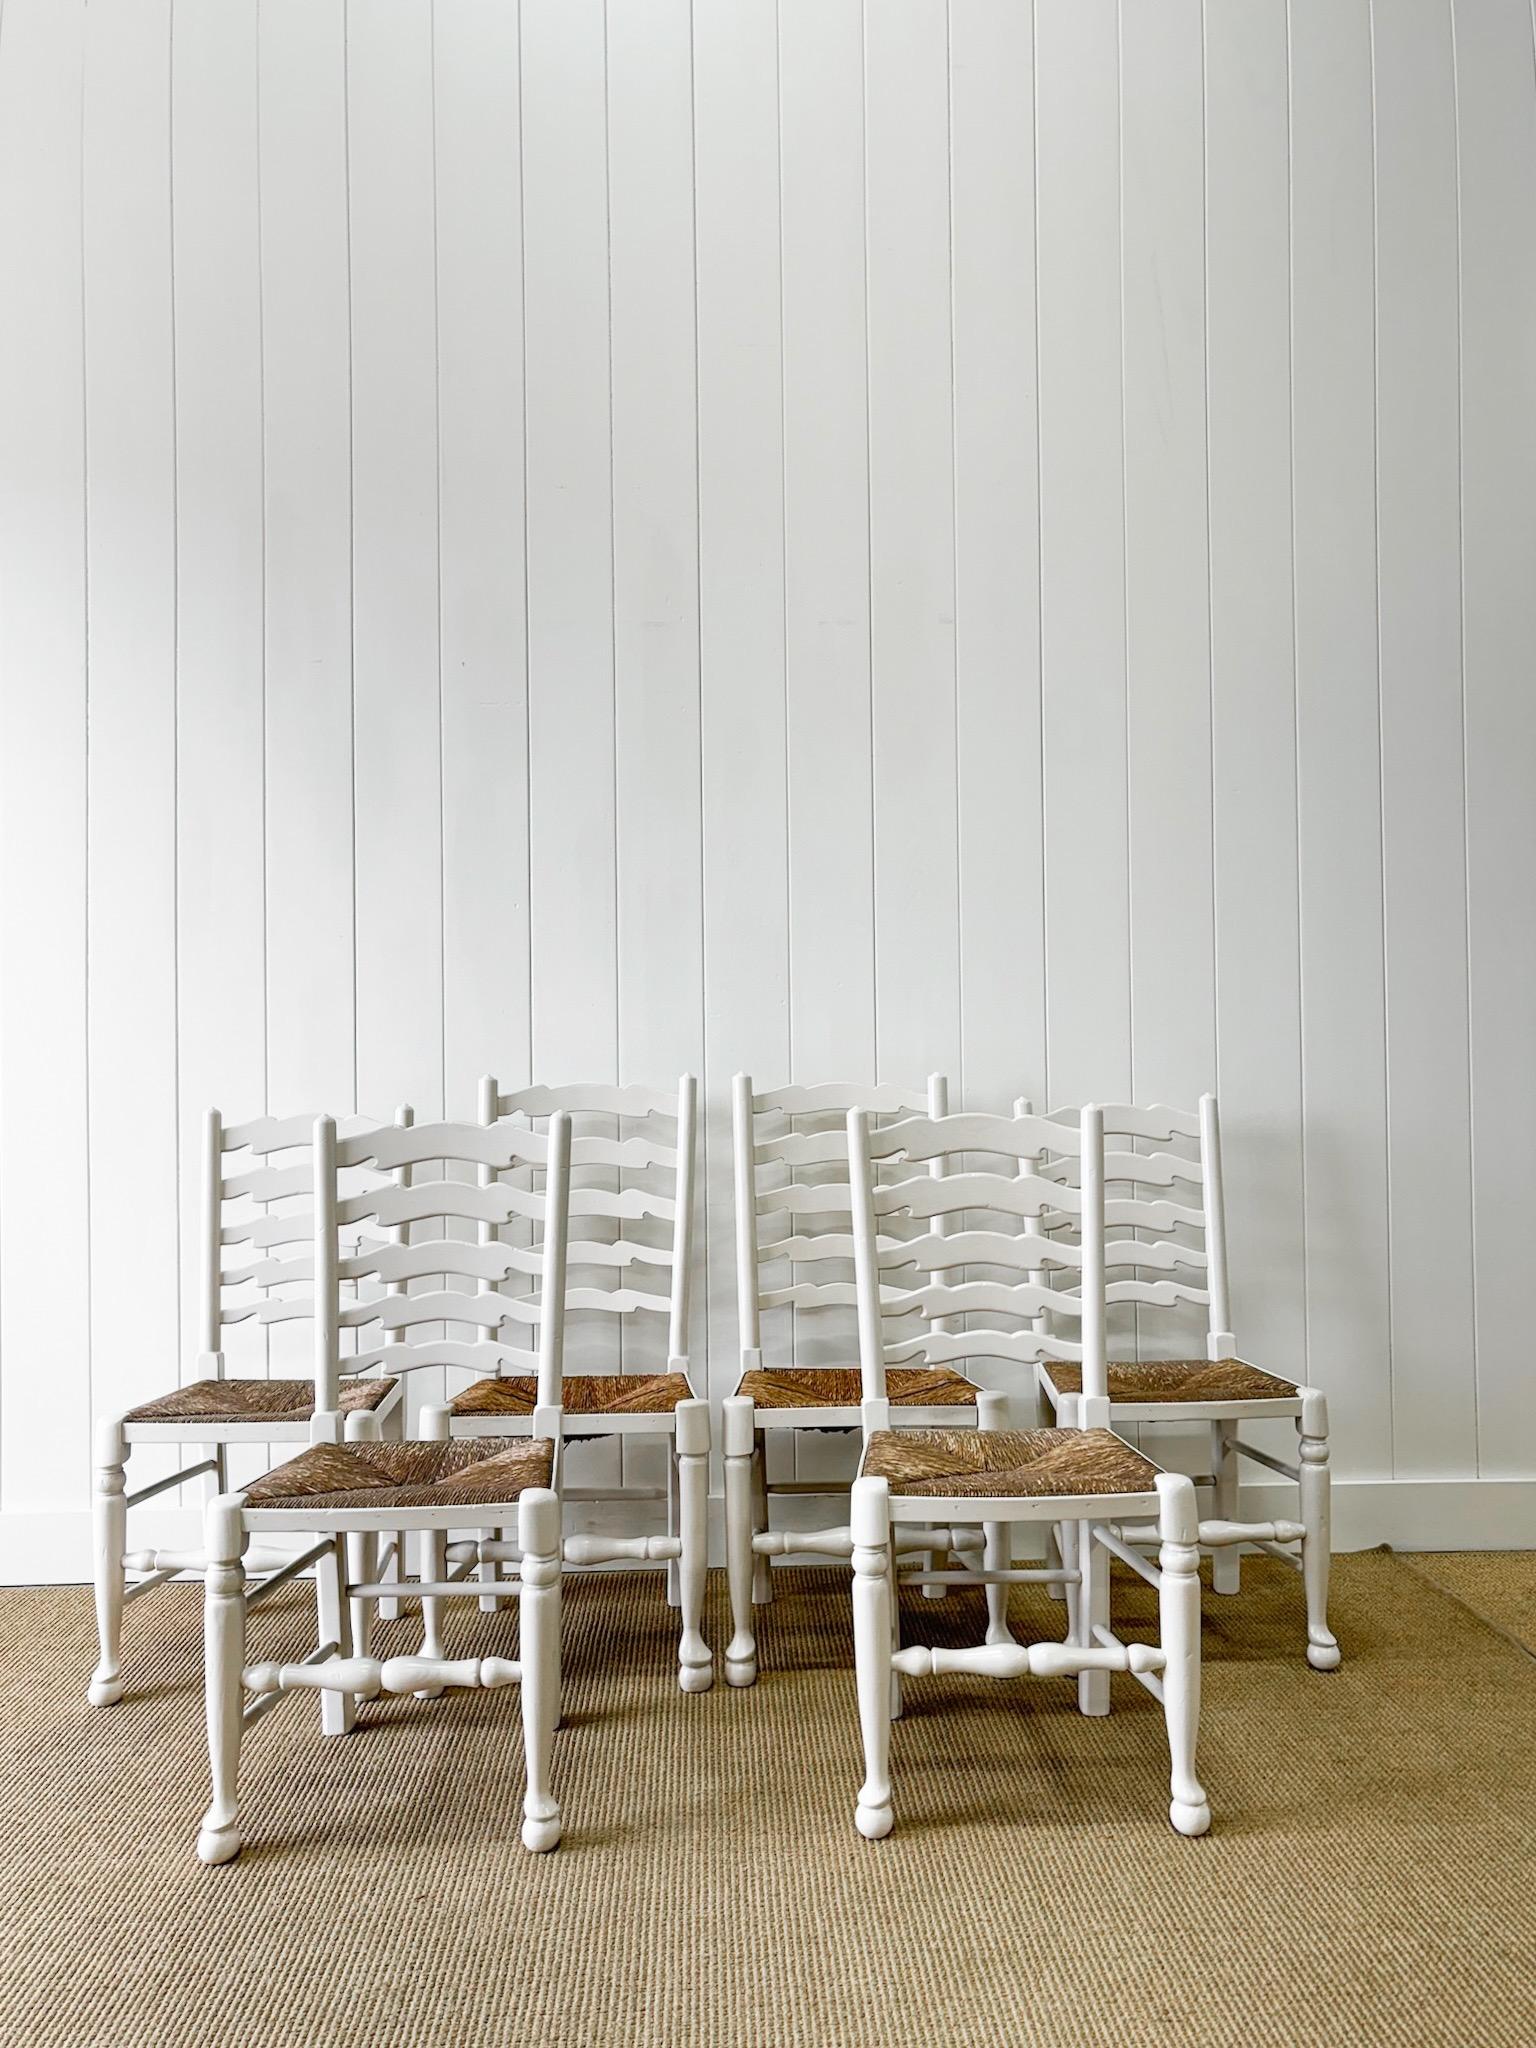 Un joli ensemble de six chaises anglaises à dossier en échelle, peintes en blanc, avec de beaux sièges en jonc chaud. Deux chaises sont des 